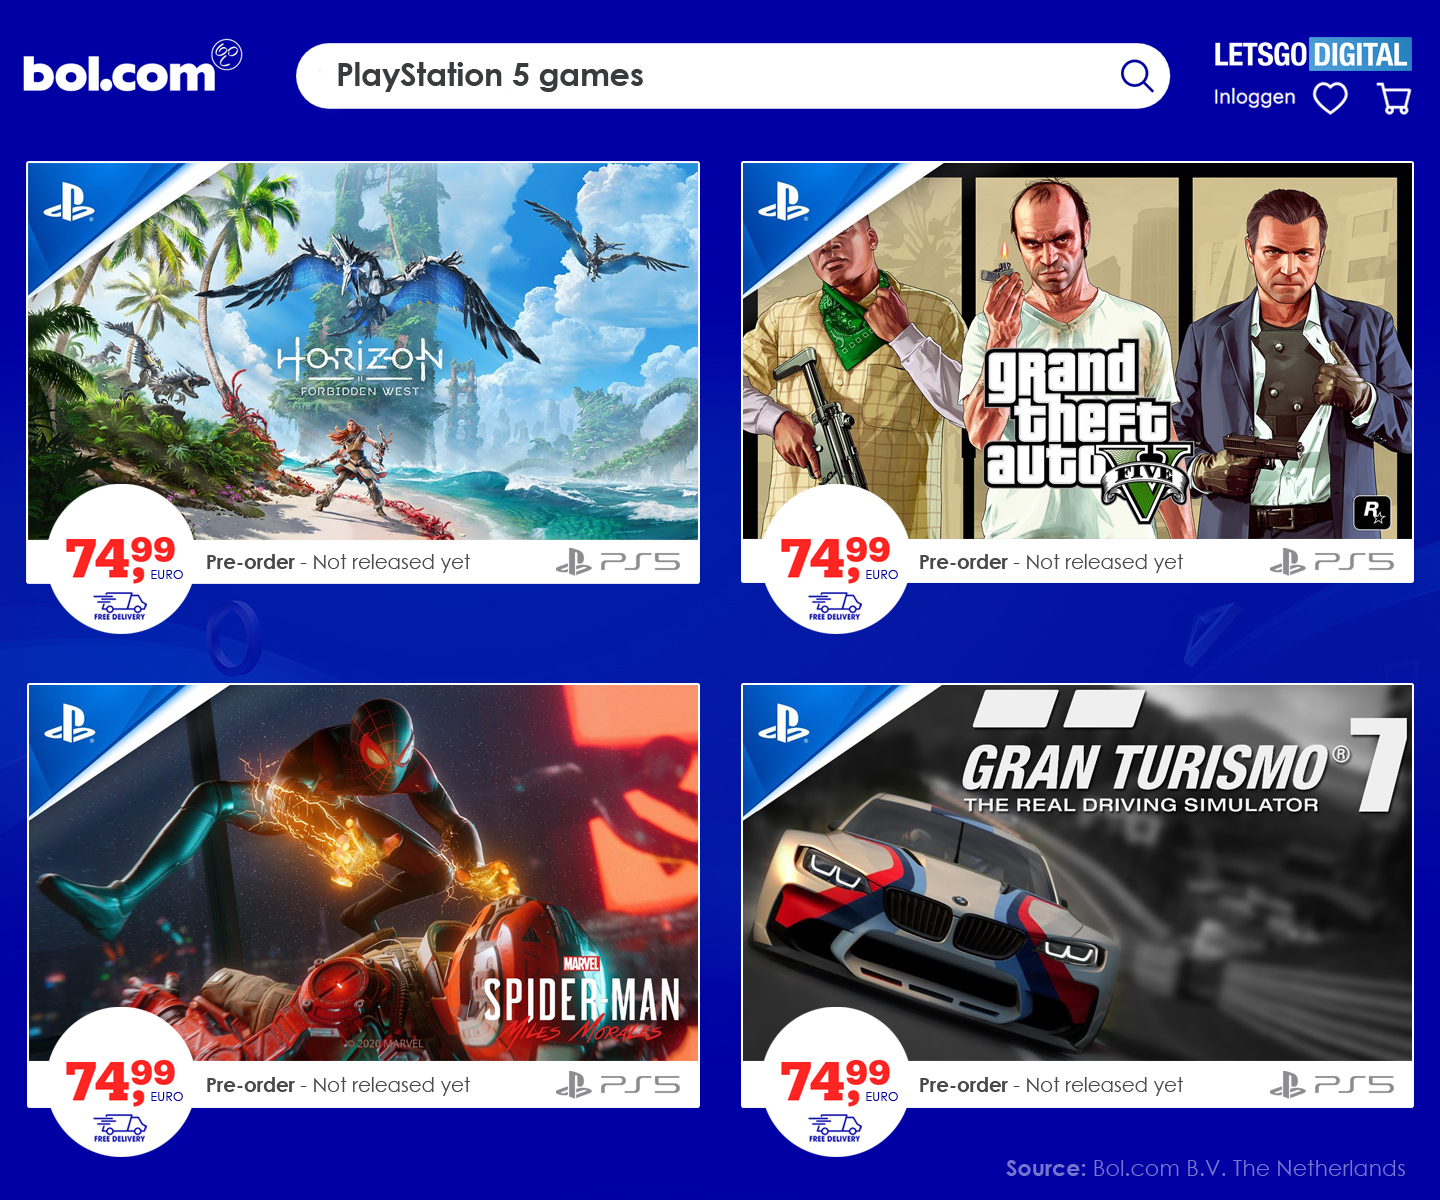 diameter Maken Fabriek Prijs voor PlayStation 5 games aanzienlijk hoger bij Bol.com | LetsGoDigital